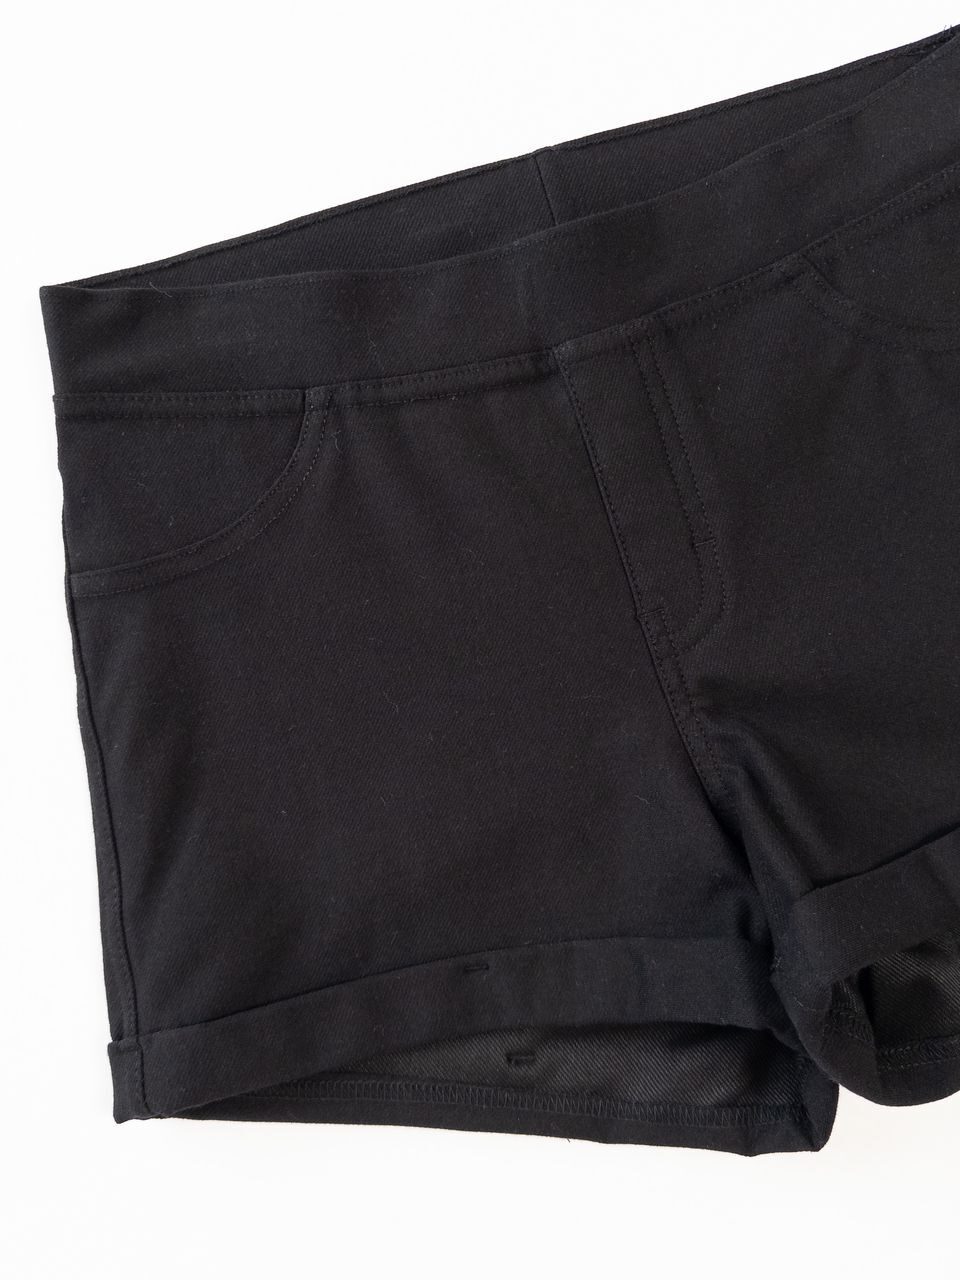 Шорты из эластичного трикотажа с эффектом джинсовой ткани цвет черный на рост 170 см 14+ лет H&M